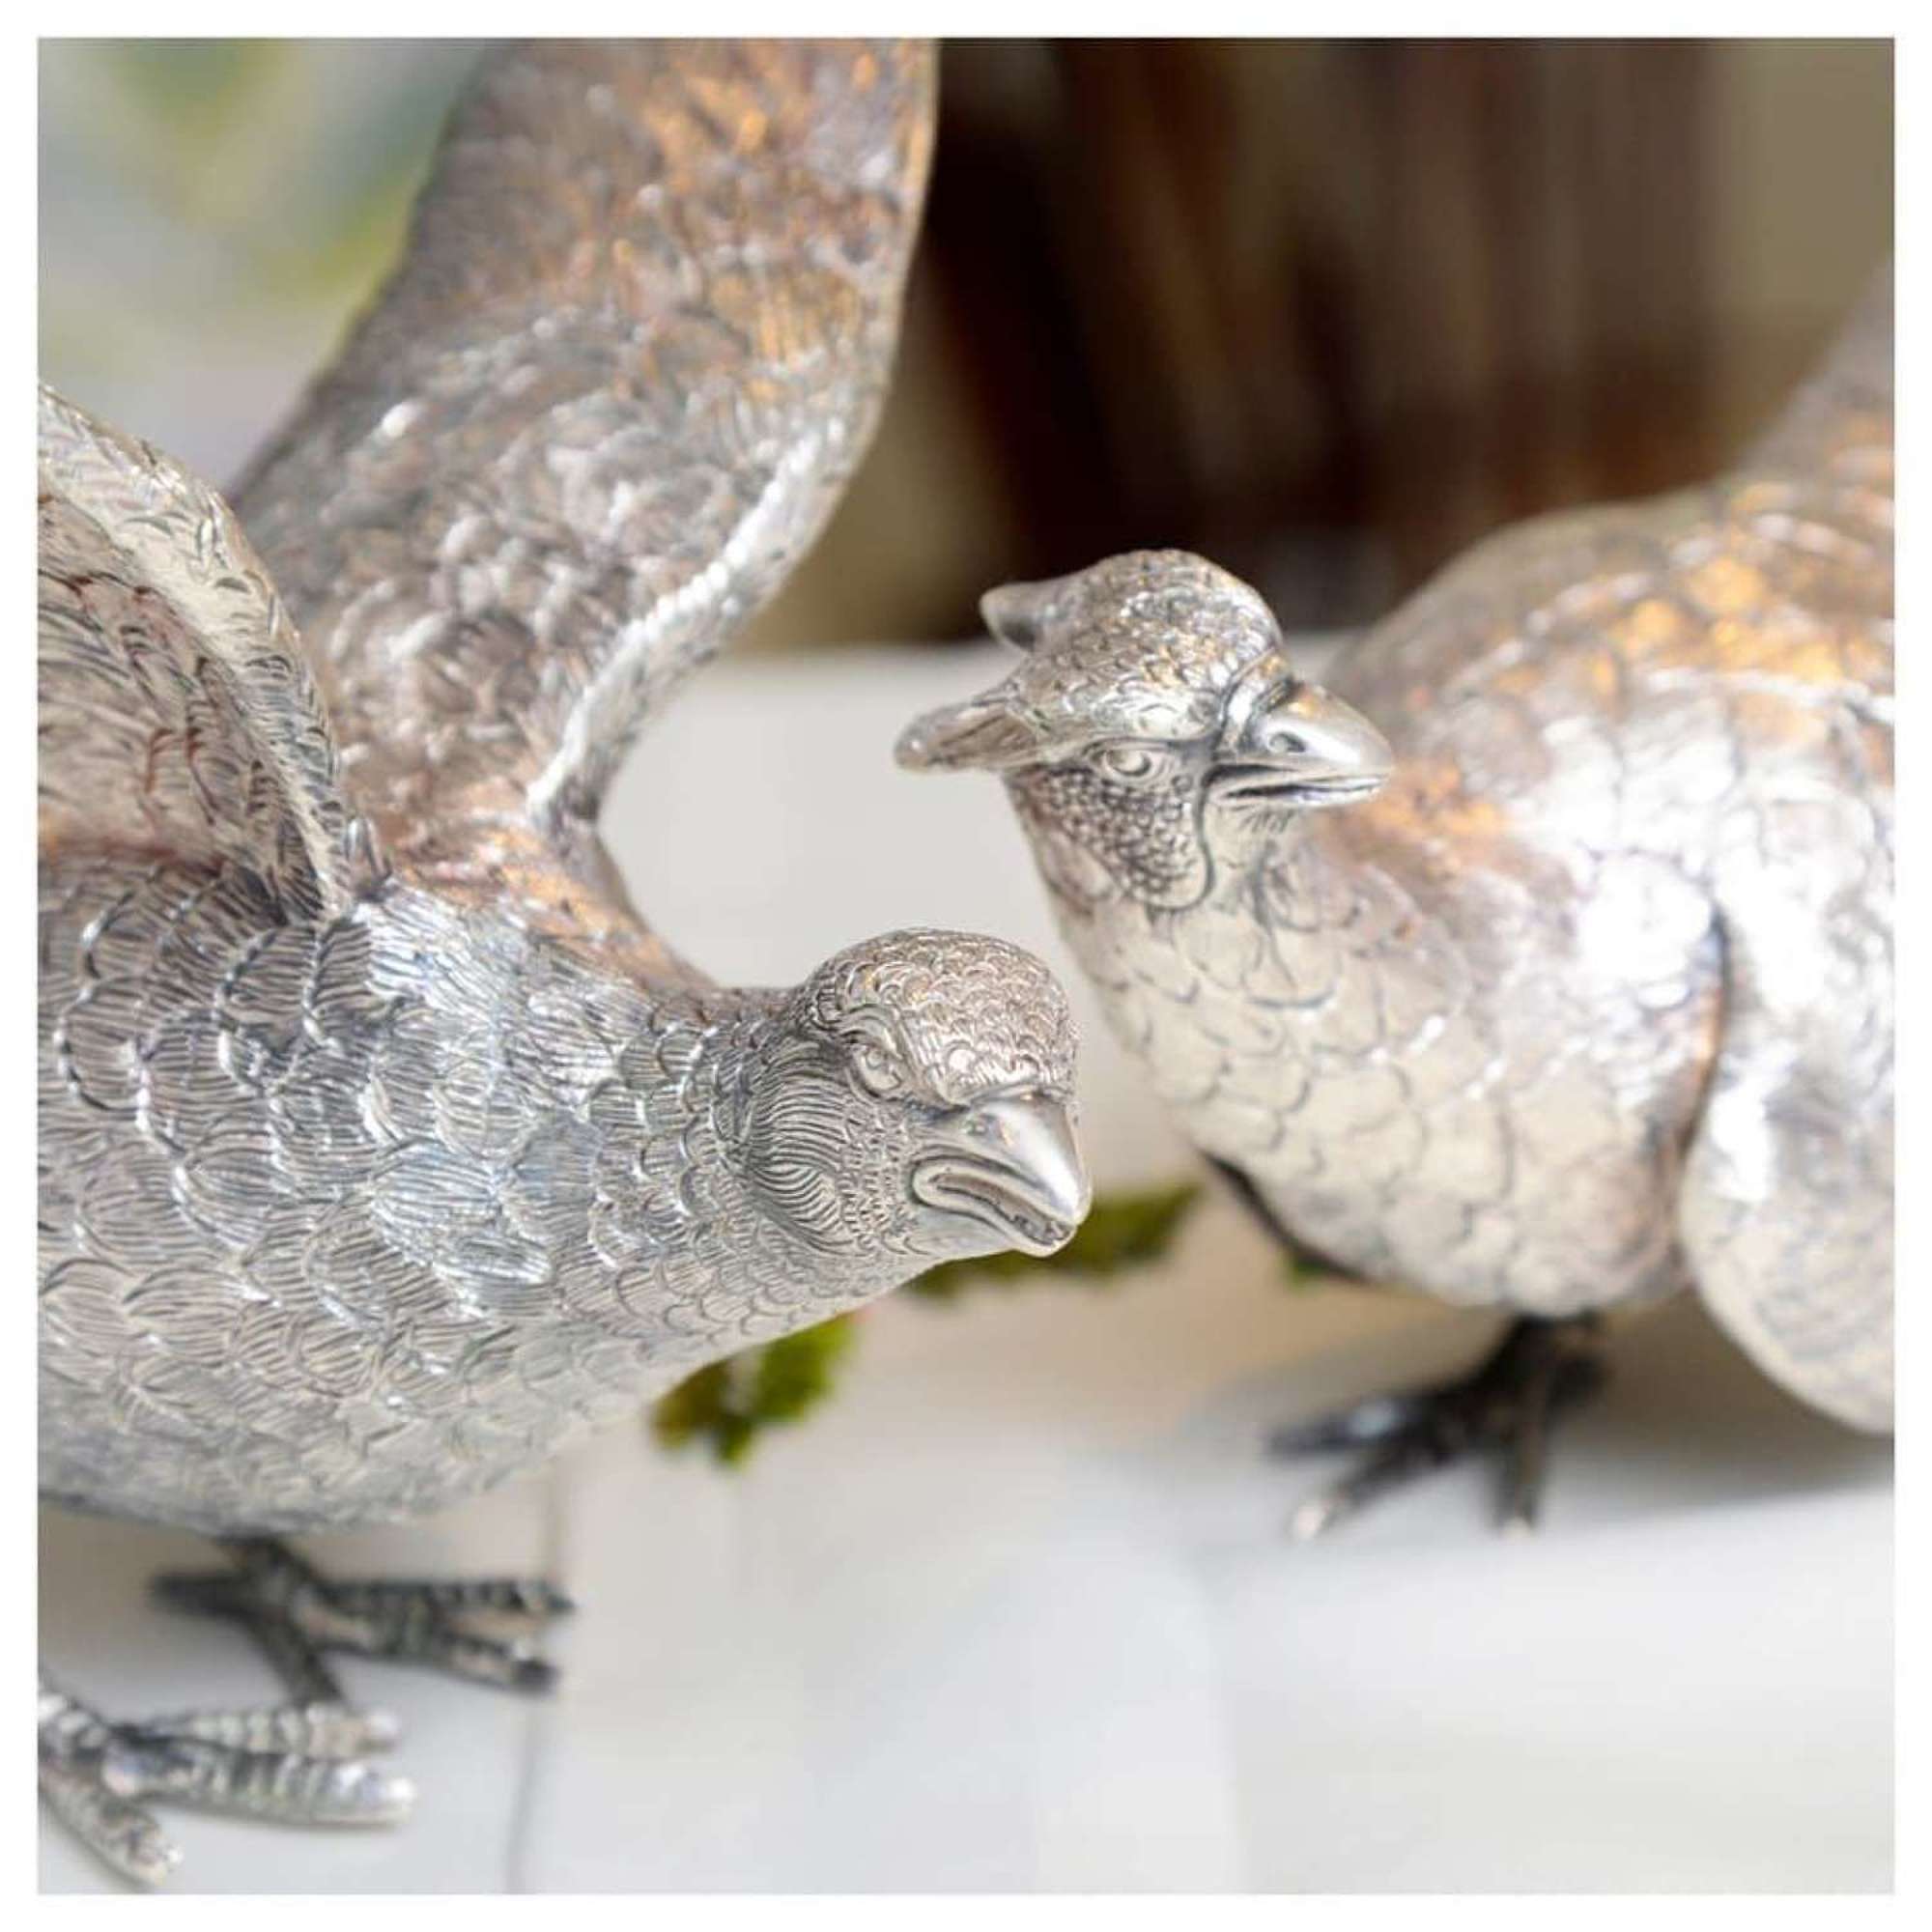 Pair of silver pheasants - by C. J. Vander